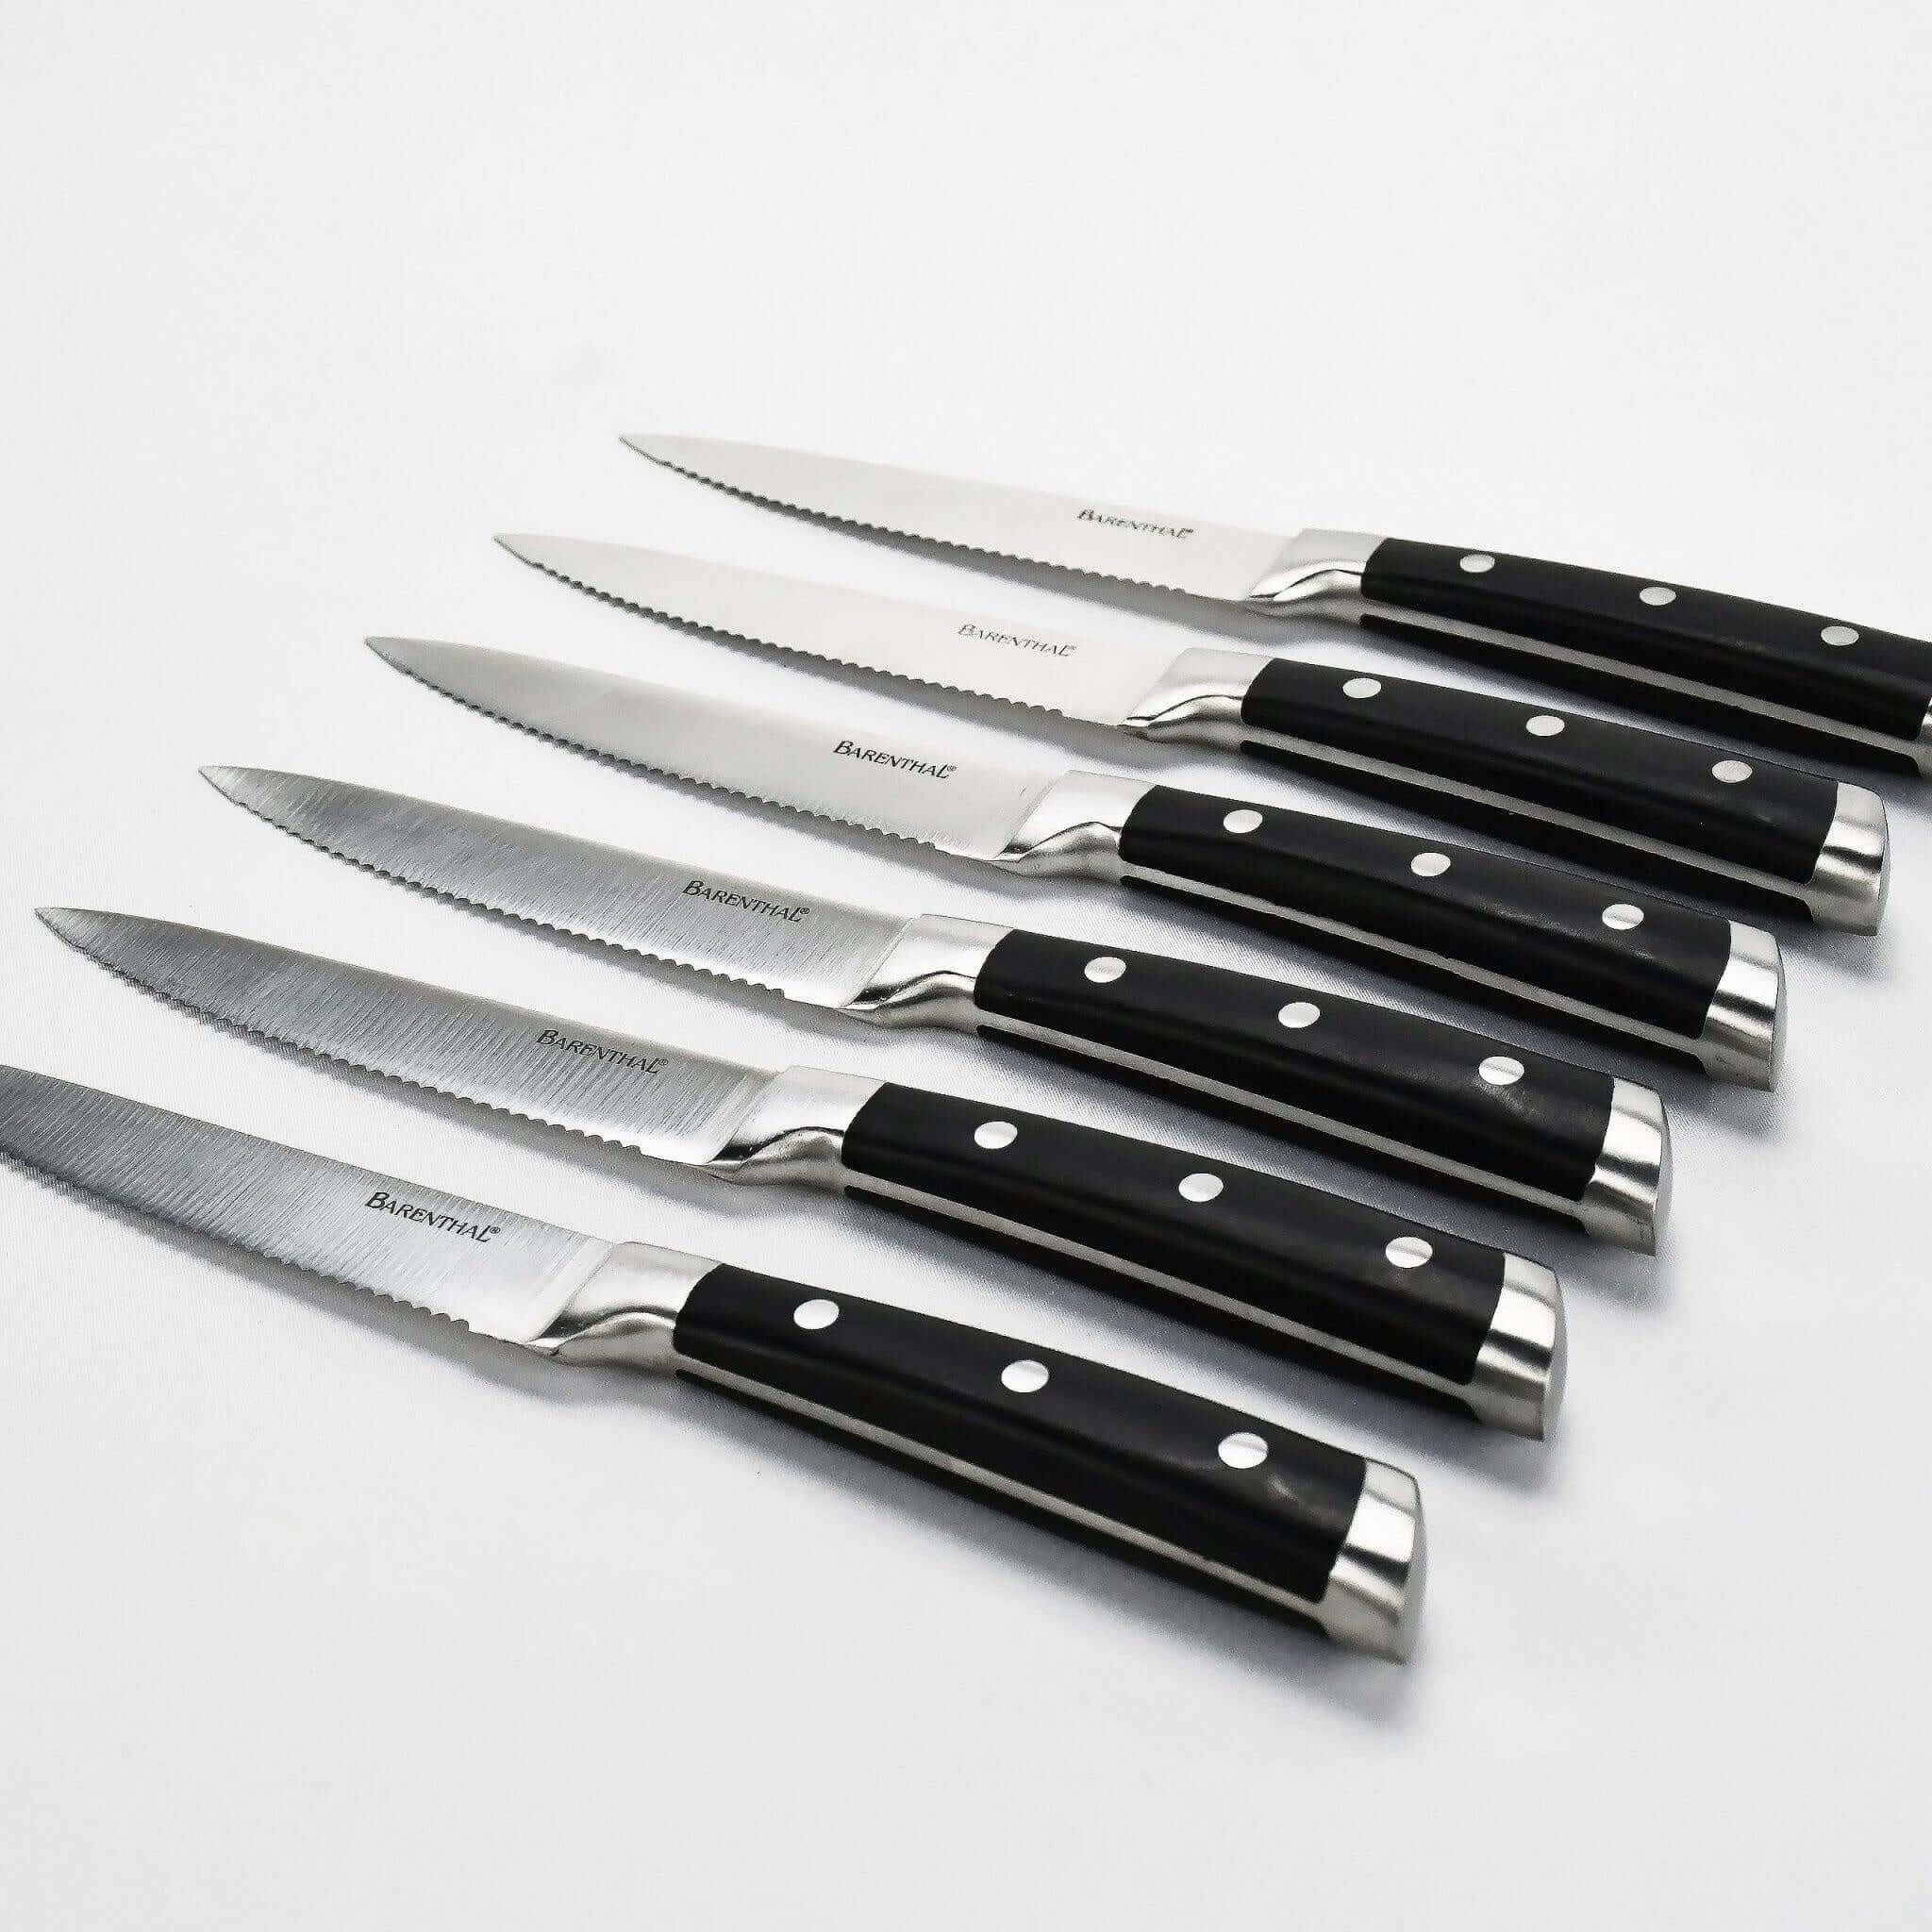 http://hansmart.com/cdn/shop/products/barenthal-6-pc-1810-german-stainless-steel-steak-knife-set-with-velvet-lined-storage-case-600807-sw.jpg?v=1645458317